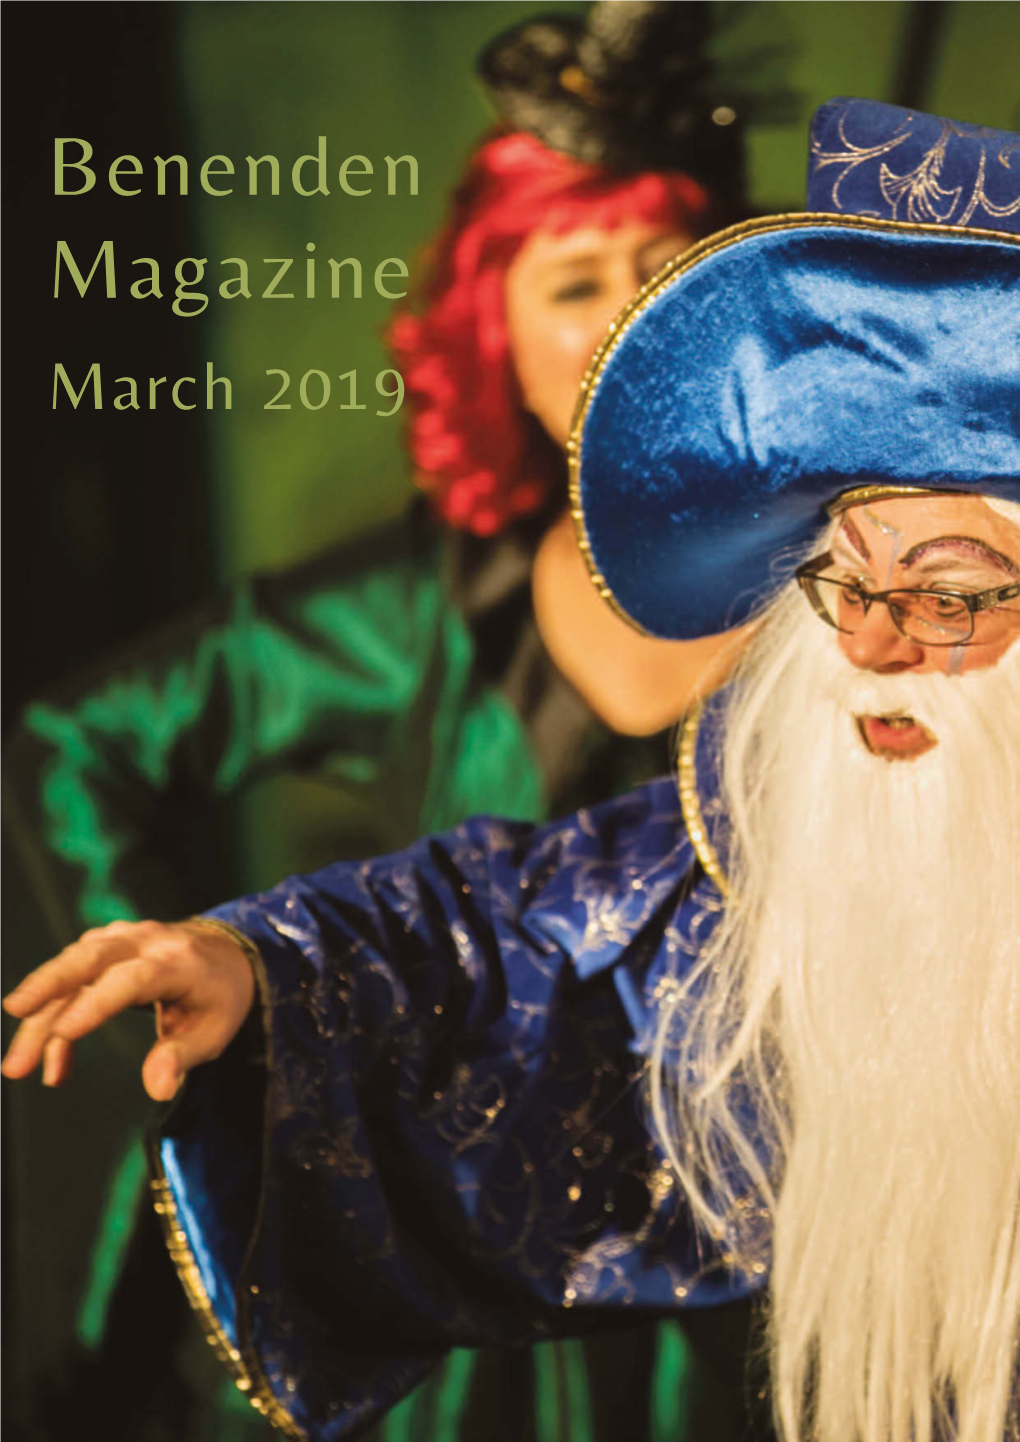 Benenden Magazine March 2019